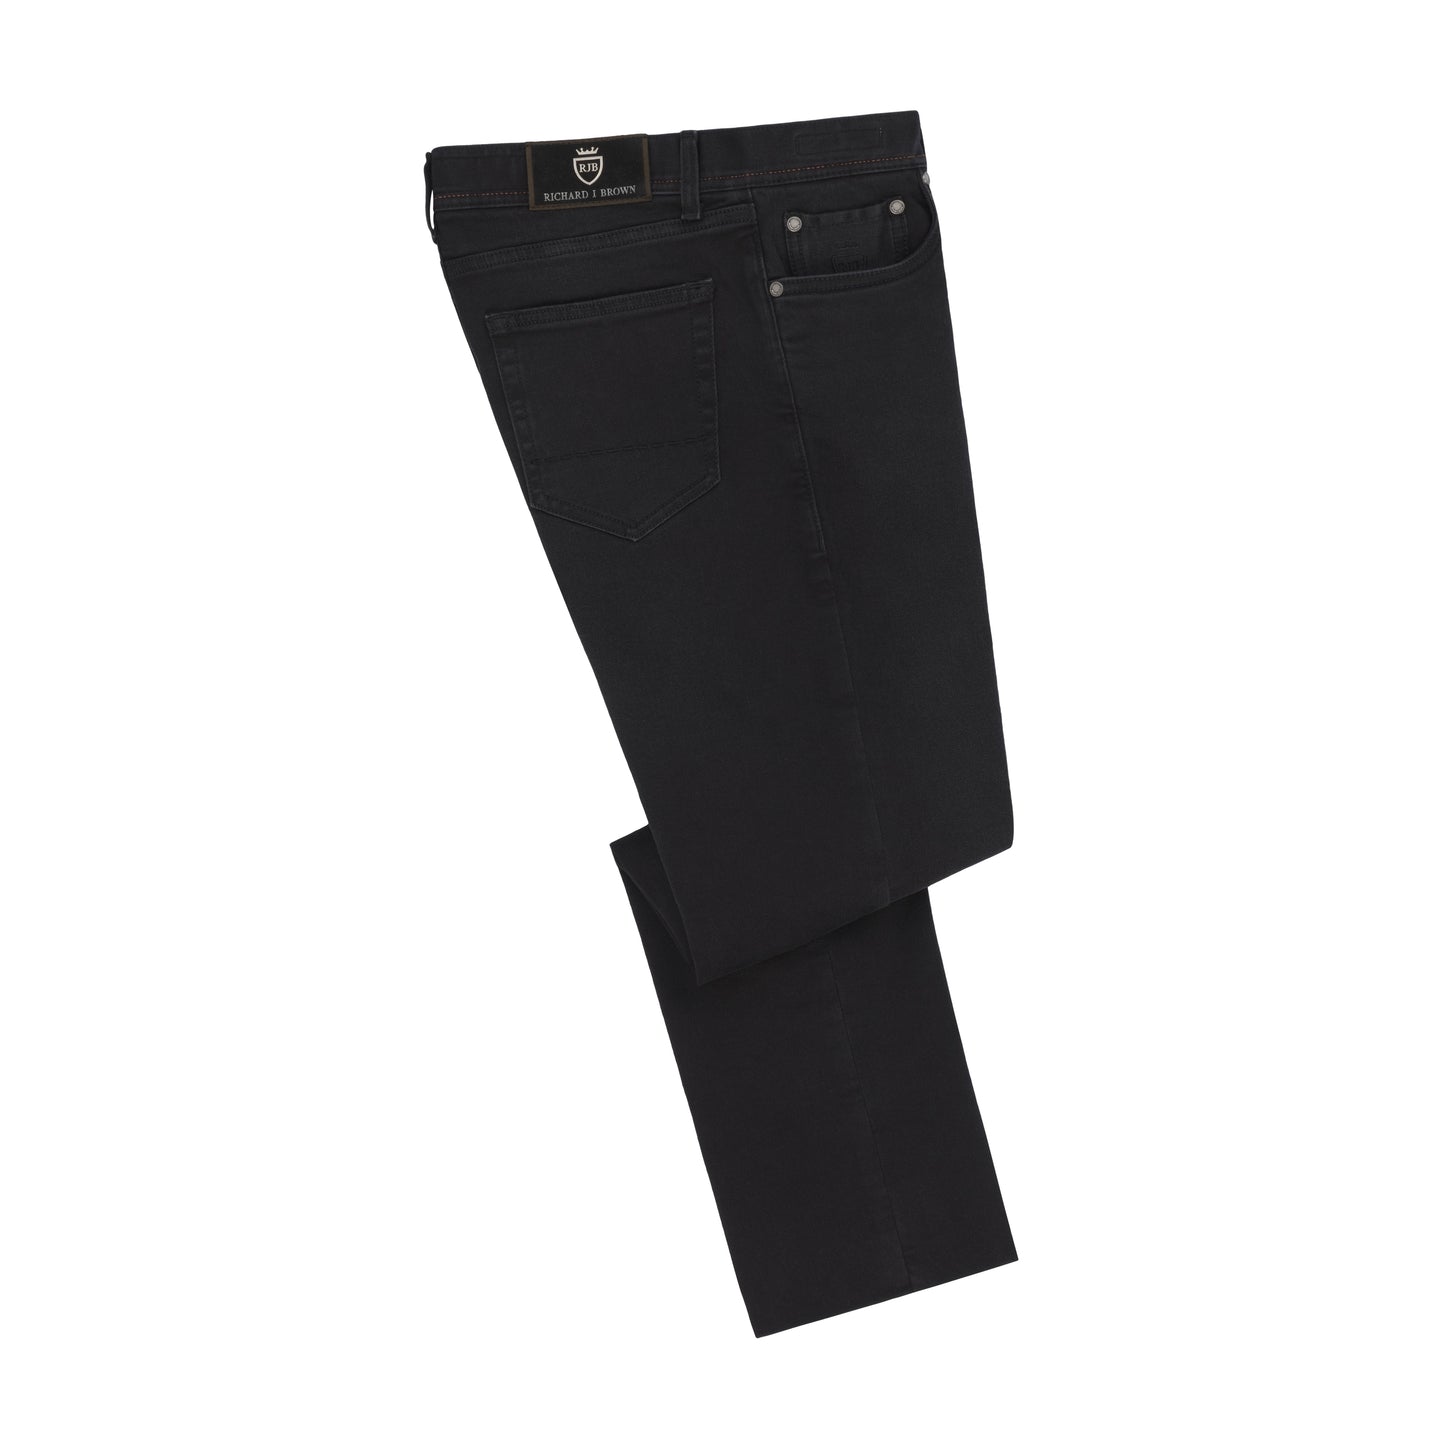 Jeans aus Stretch-Baumwolle in Schwarz mit Knopfverschluss